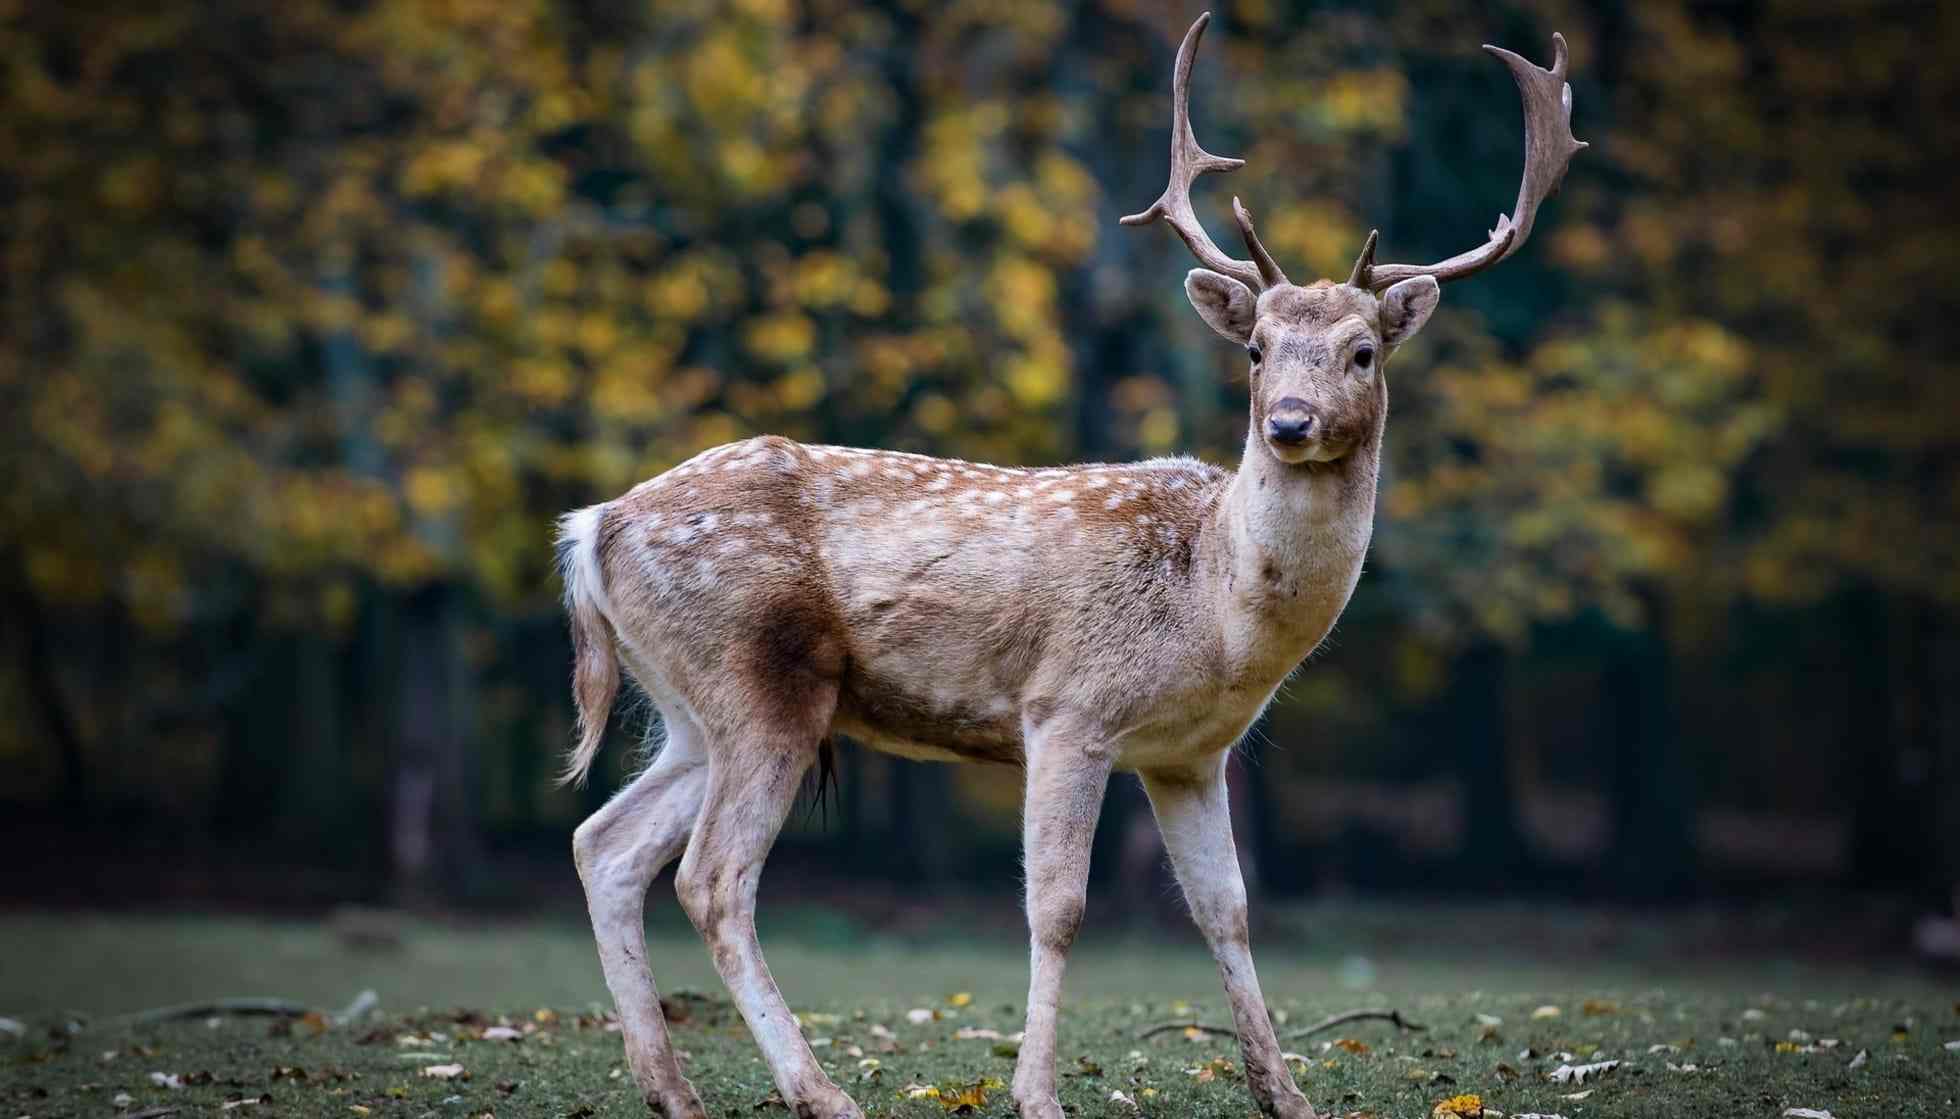 What Do Deer Look Like